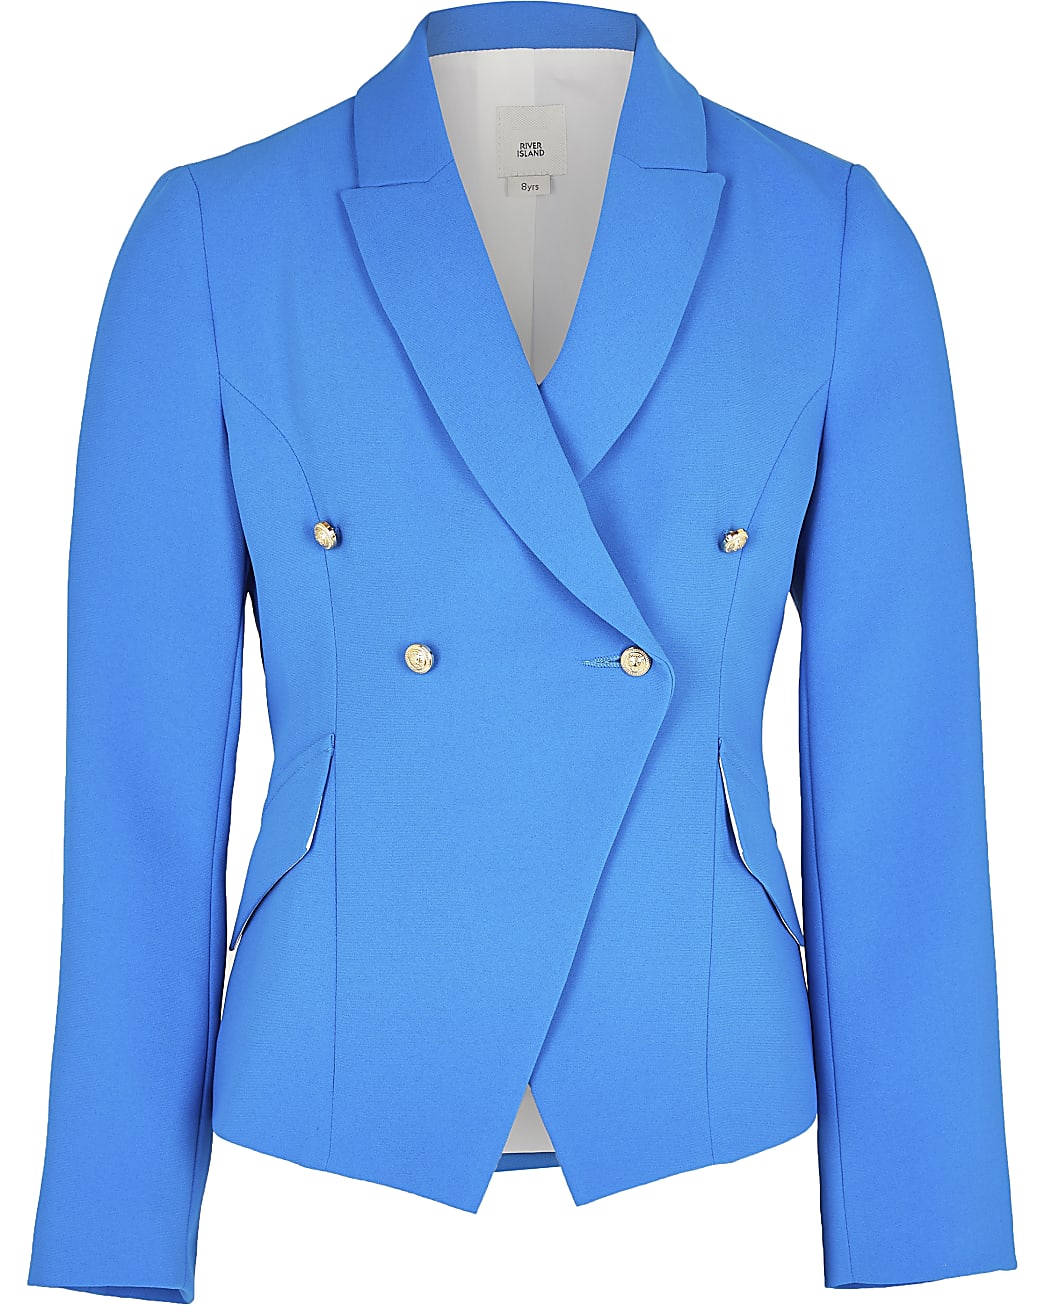 Girls blue fitted blazer